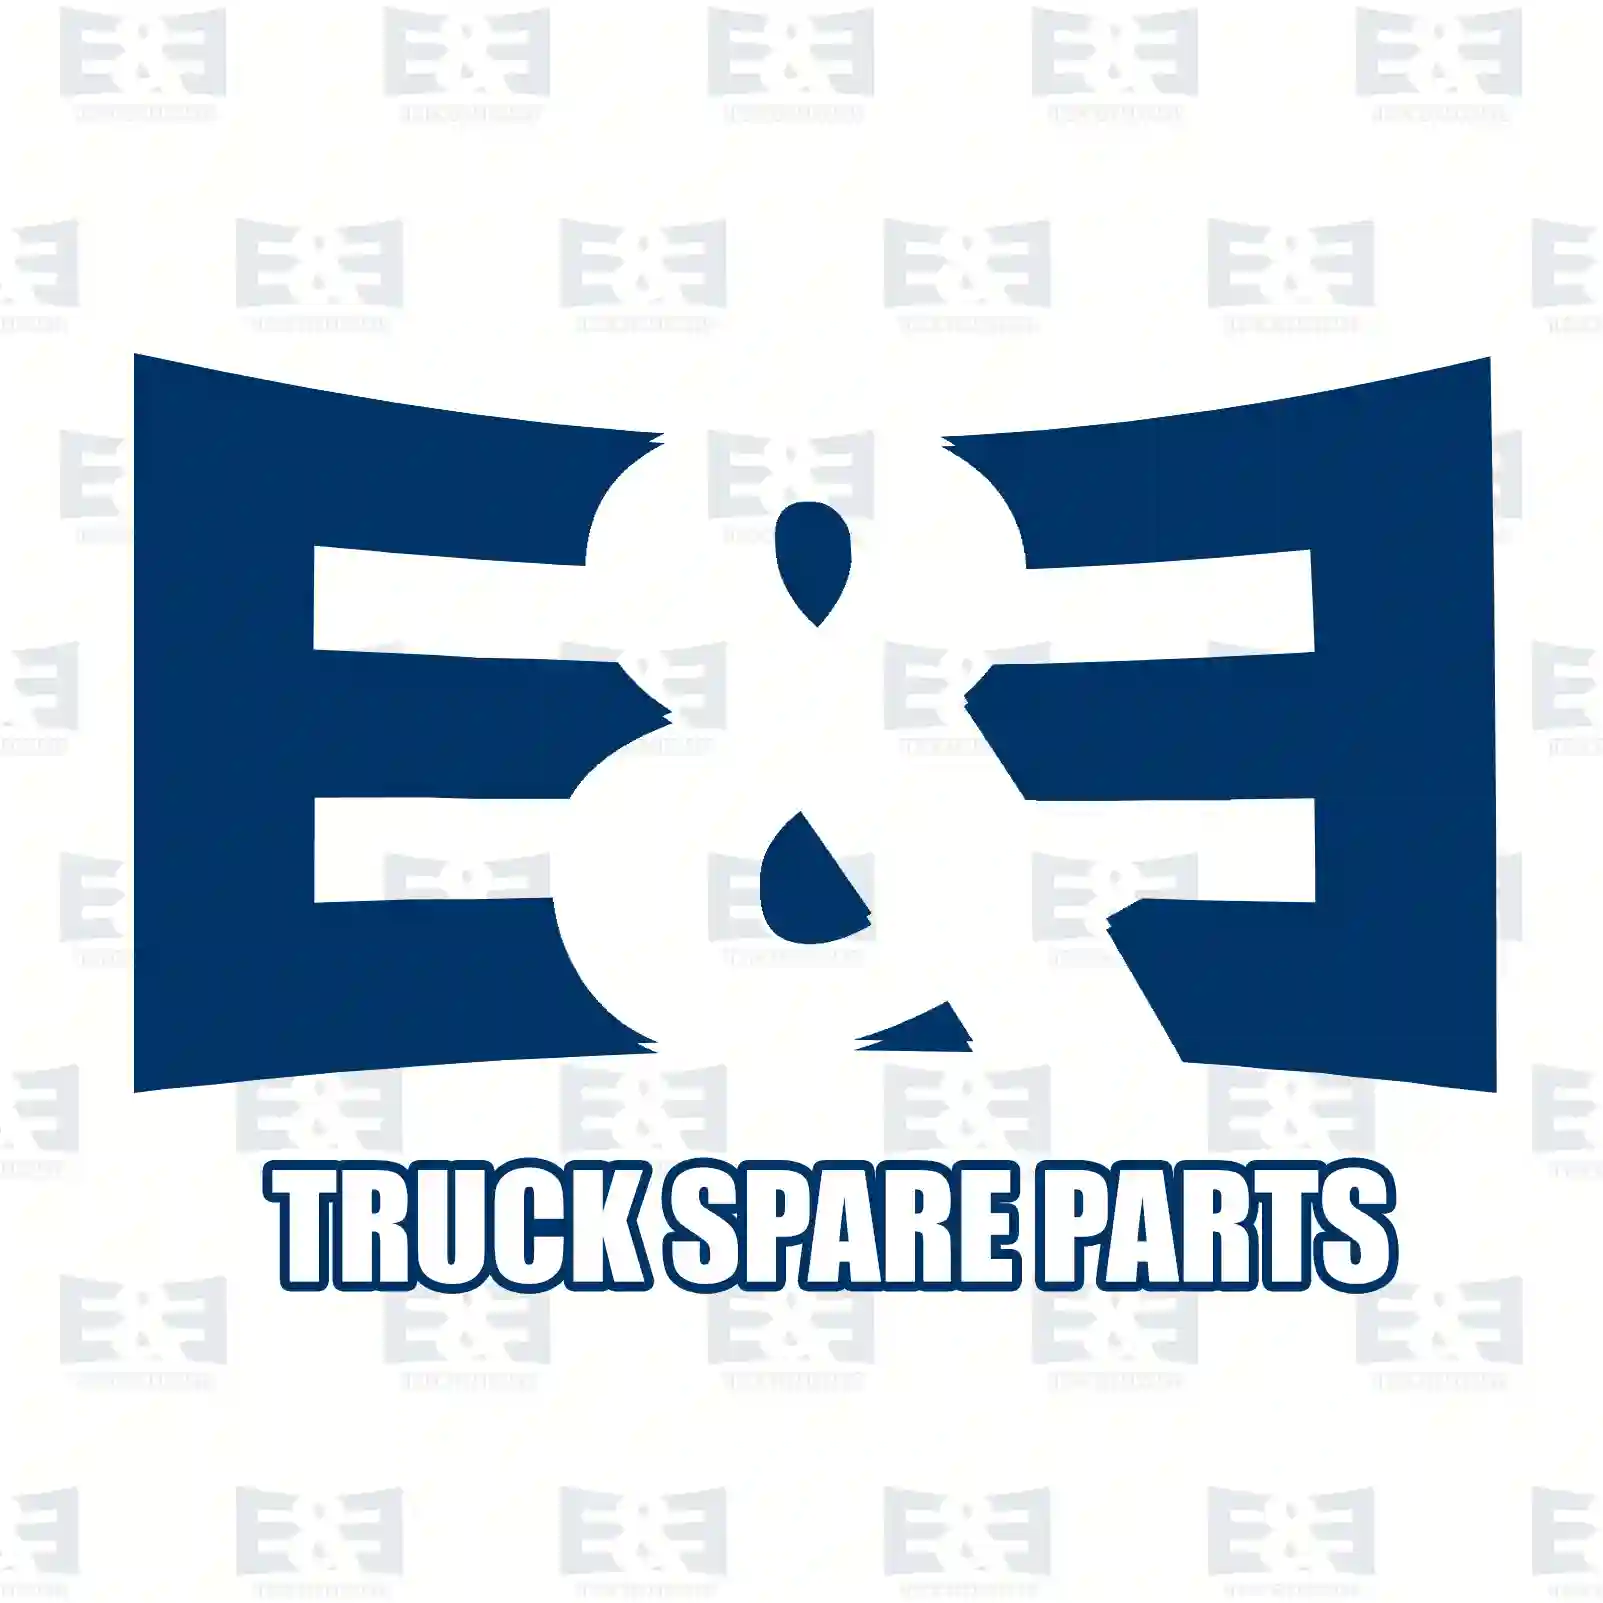 Brake drum, 2E2294319, 5010136148, 5010136148, , , , , , ||  2E2294319 E&E Truck Spare Parts | Truck Spare Parts, Auotomotive Spare Parts Brake drum, 2E2294319, 5010136148, 5010136148, , , , , , ||  2E2294319 E&E Truck Spare Parts | Truck Spare Parts, Auotomotive Spare Parts